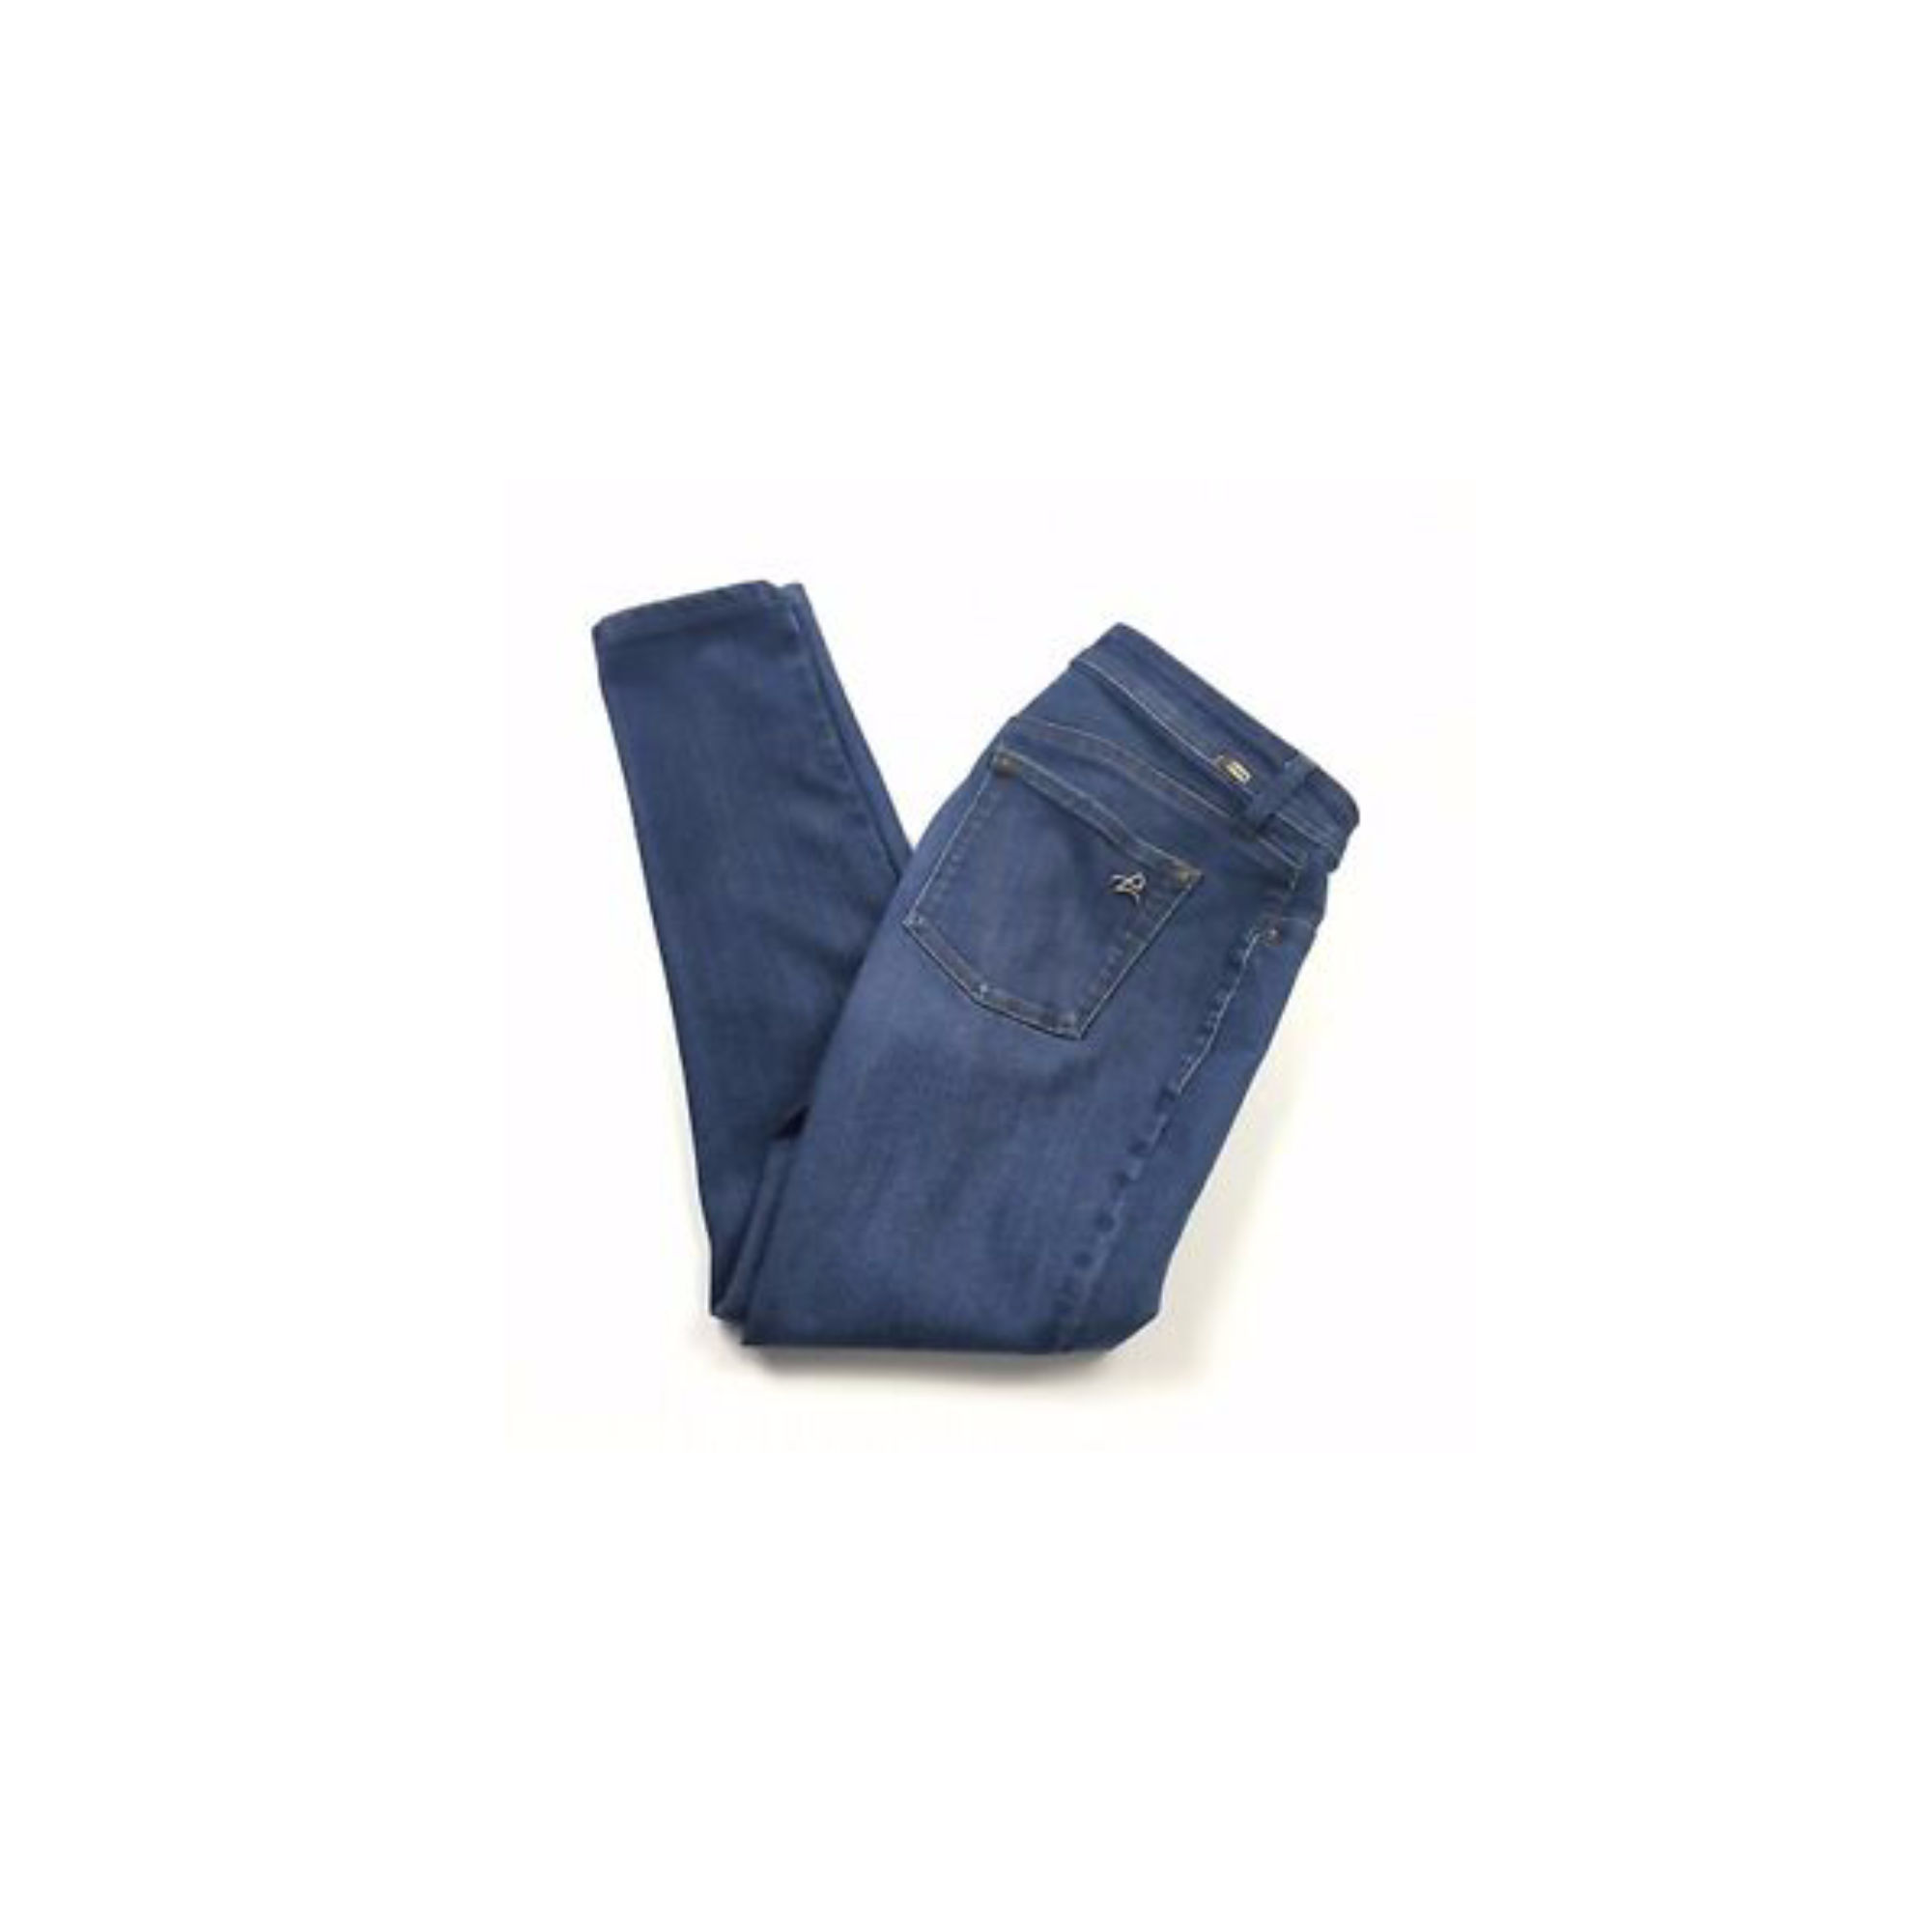 dl1961 emma jeans